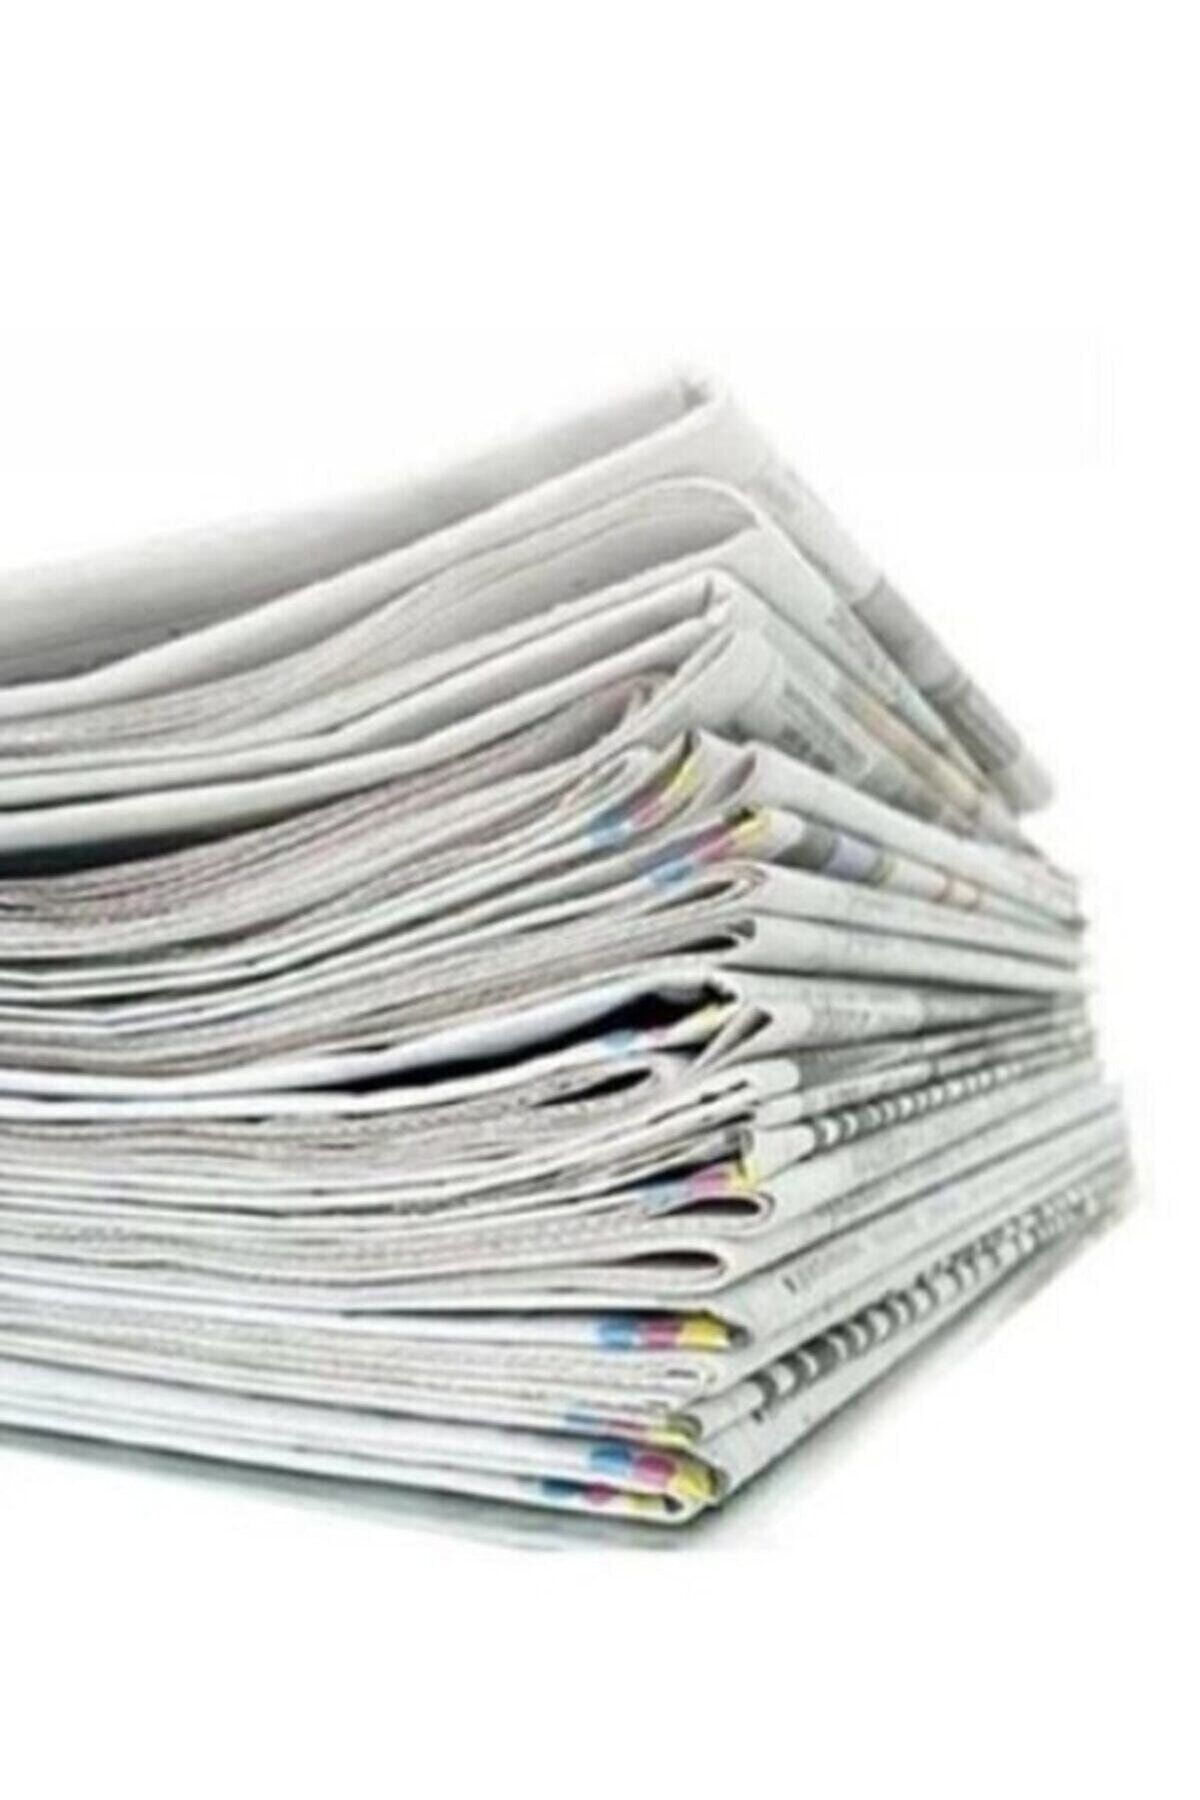 Mçb Group Eski Gazete 5 Kg Taşınma Gazetesi Temiz Gazete Kağıdı Kağıt Gazete